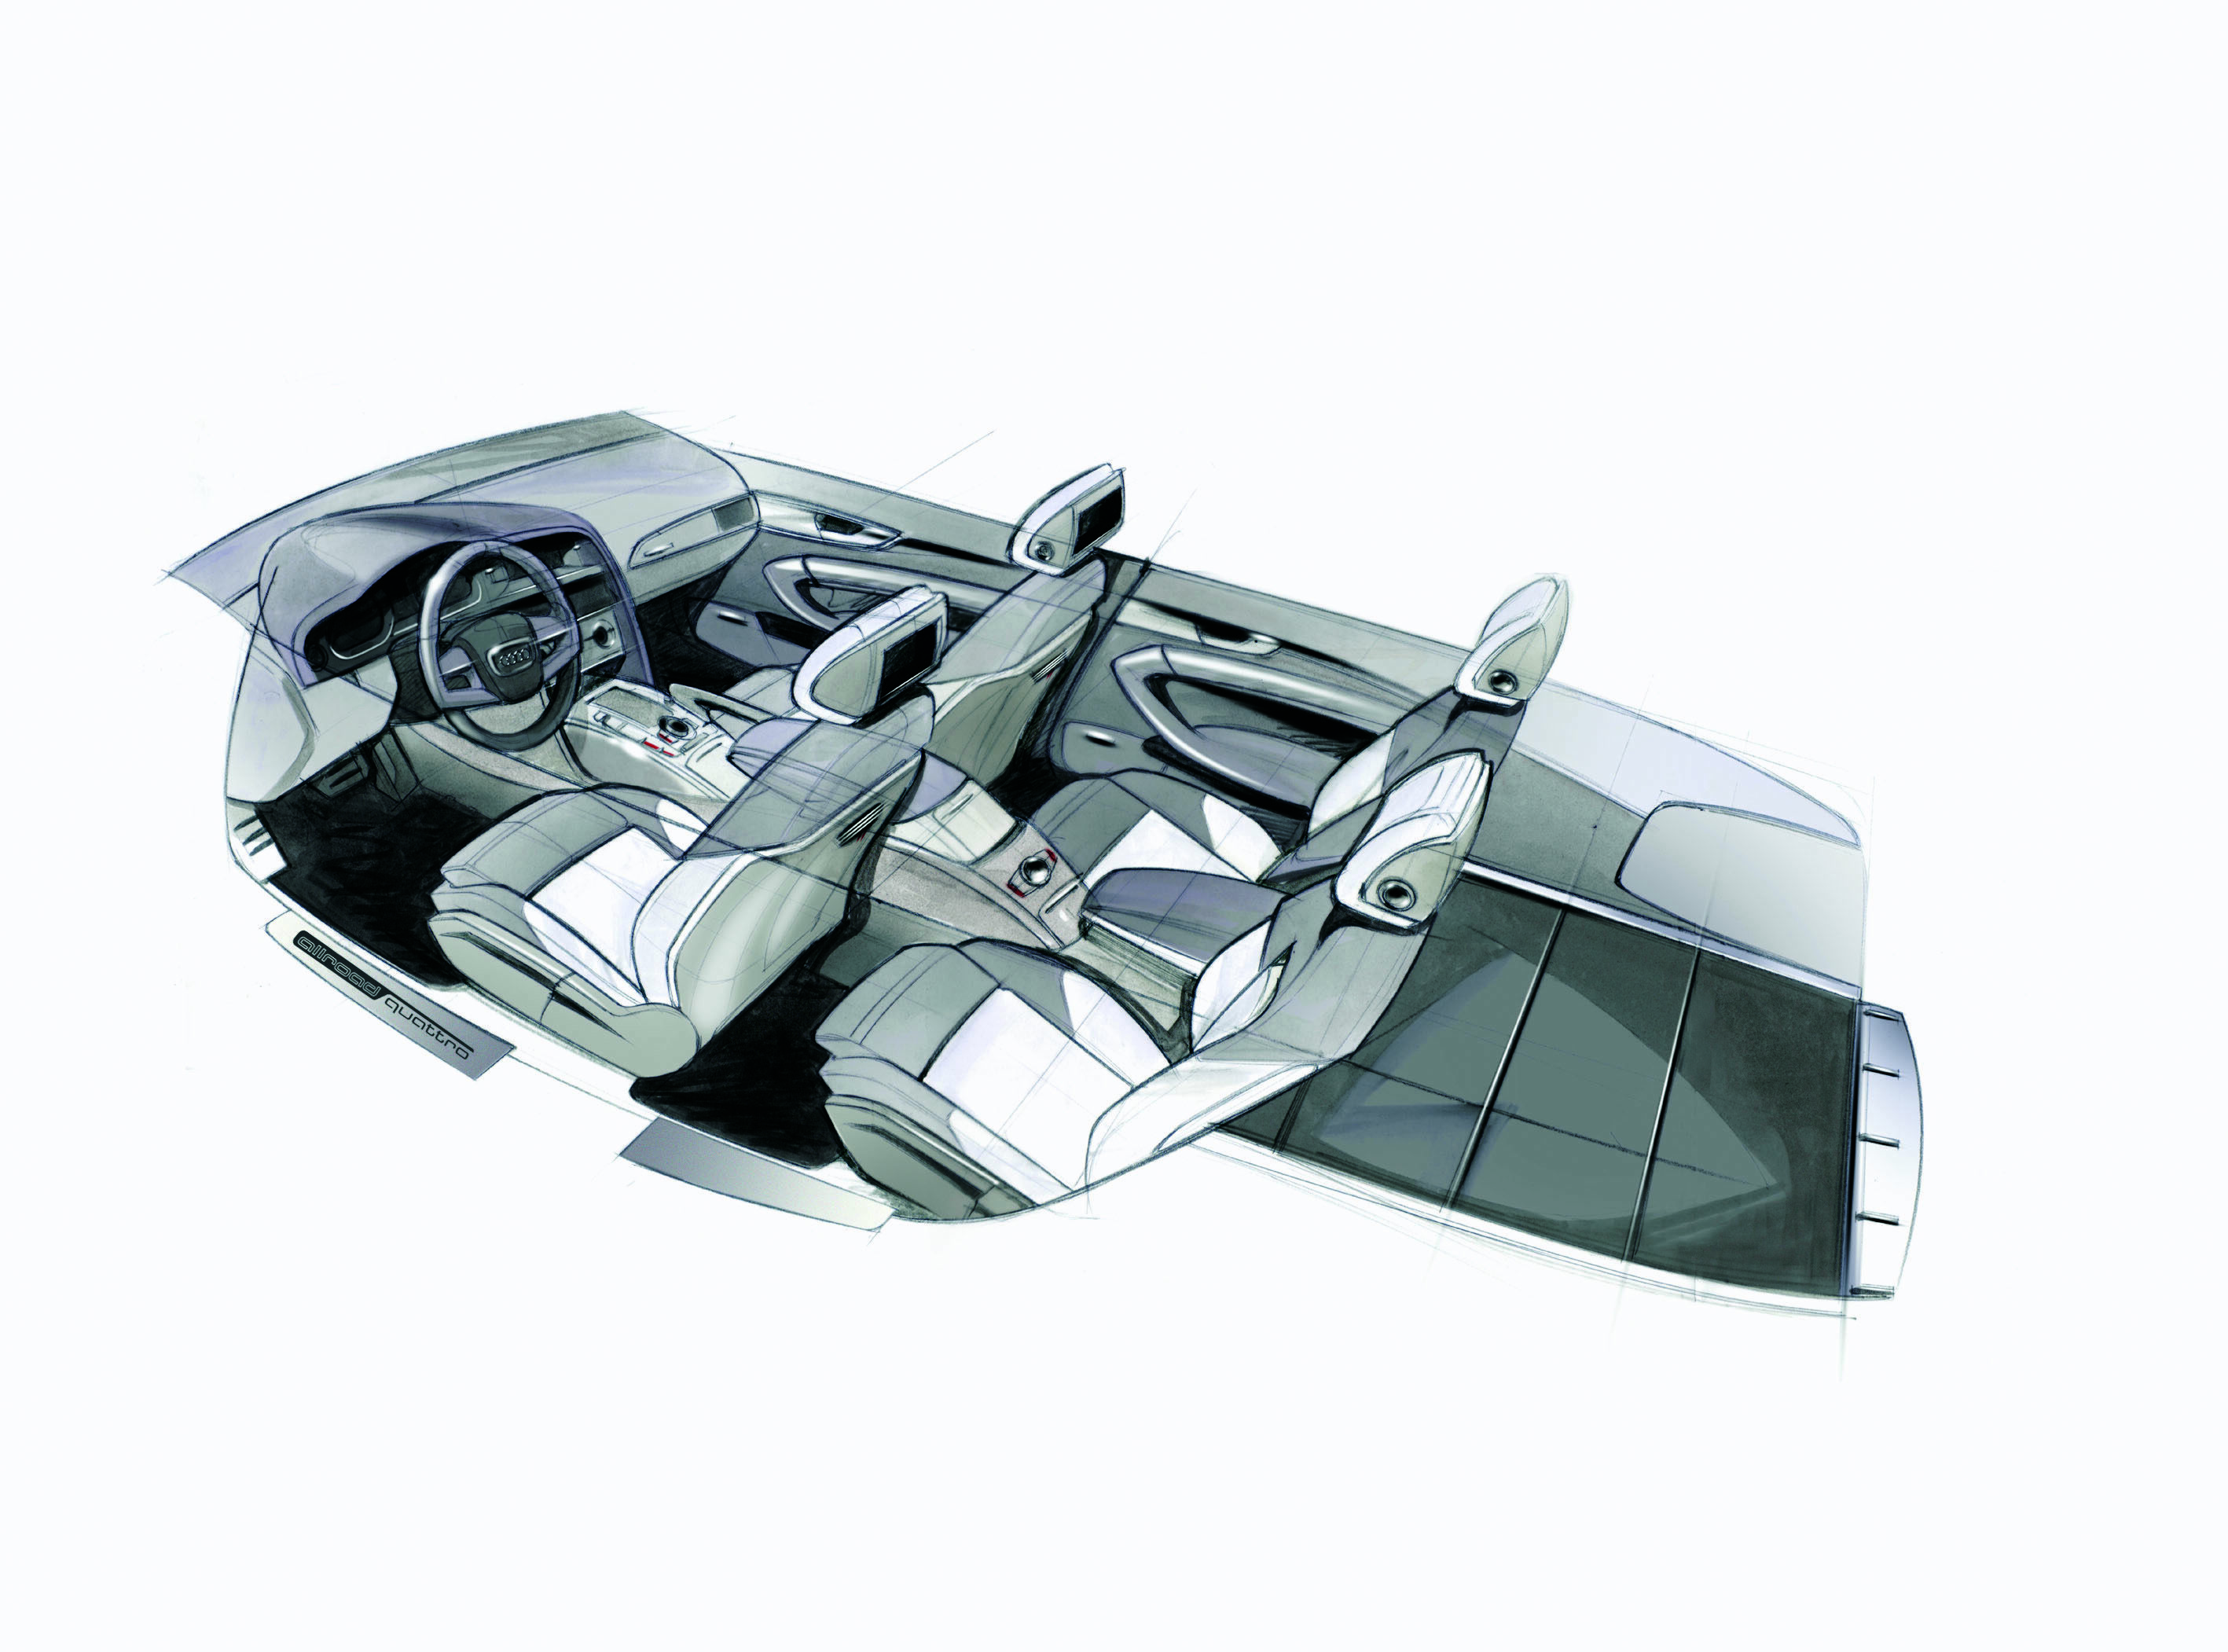 Audi allroad quattro concept - Design